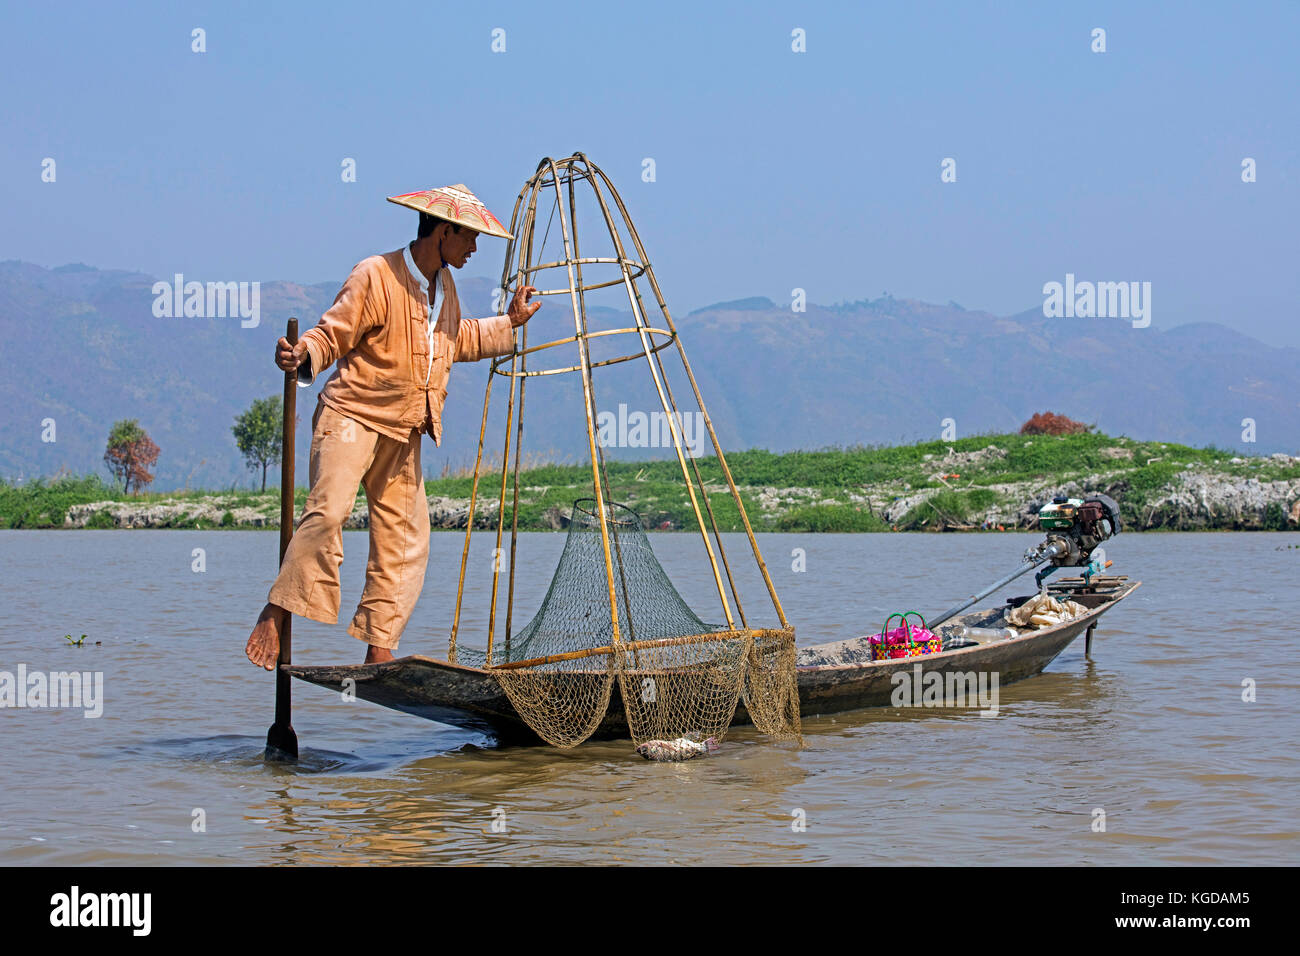 Pescatore intha sterzo tradizionale barca da pesca avvolgendo la sua gamba intorno il remo, Lago Inle, nyaungshwe, stato shan, myanmar / BIRMANIA Foto Stock